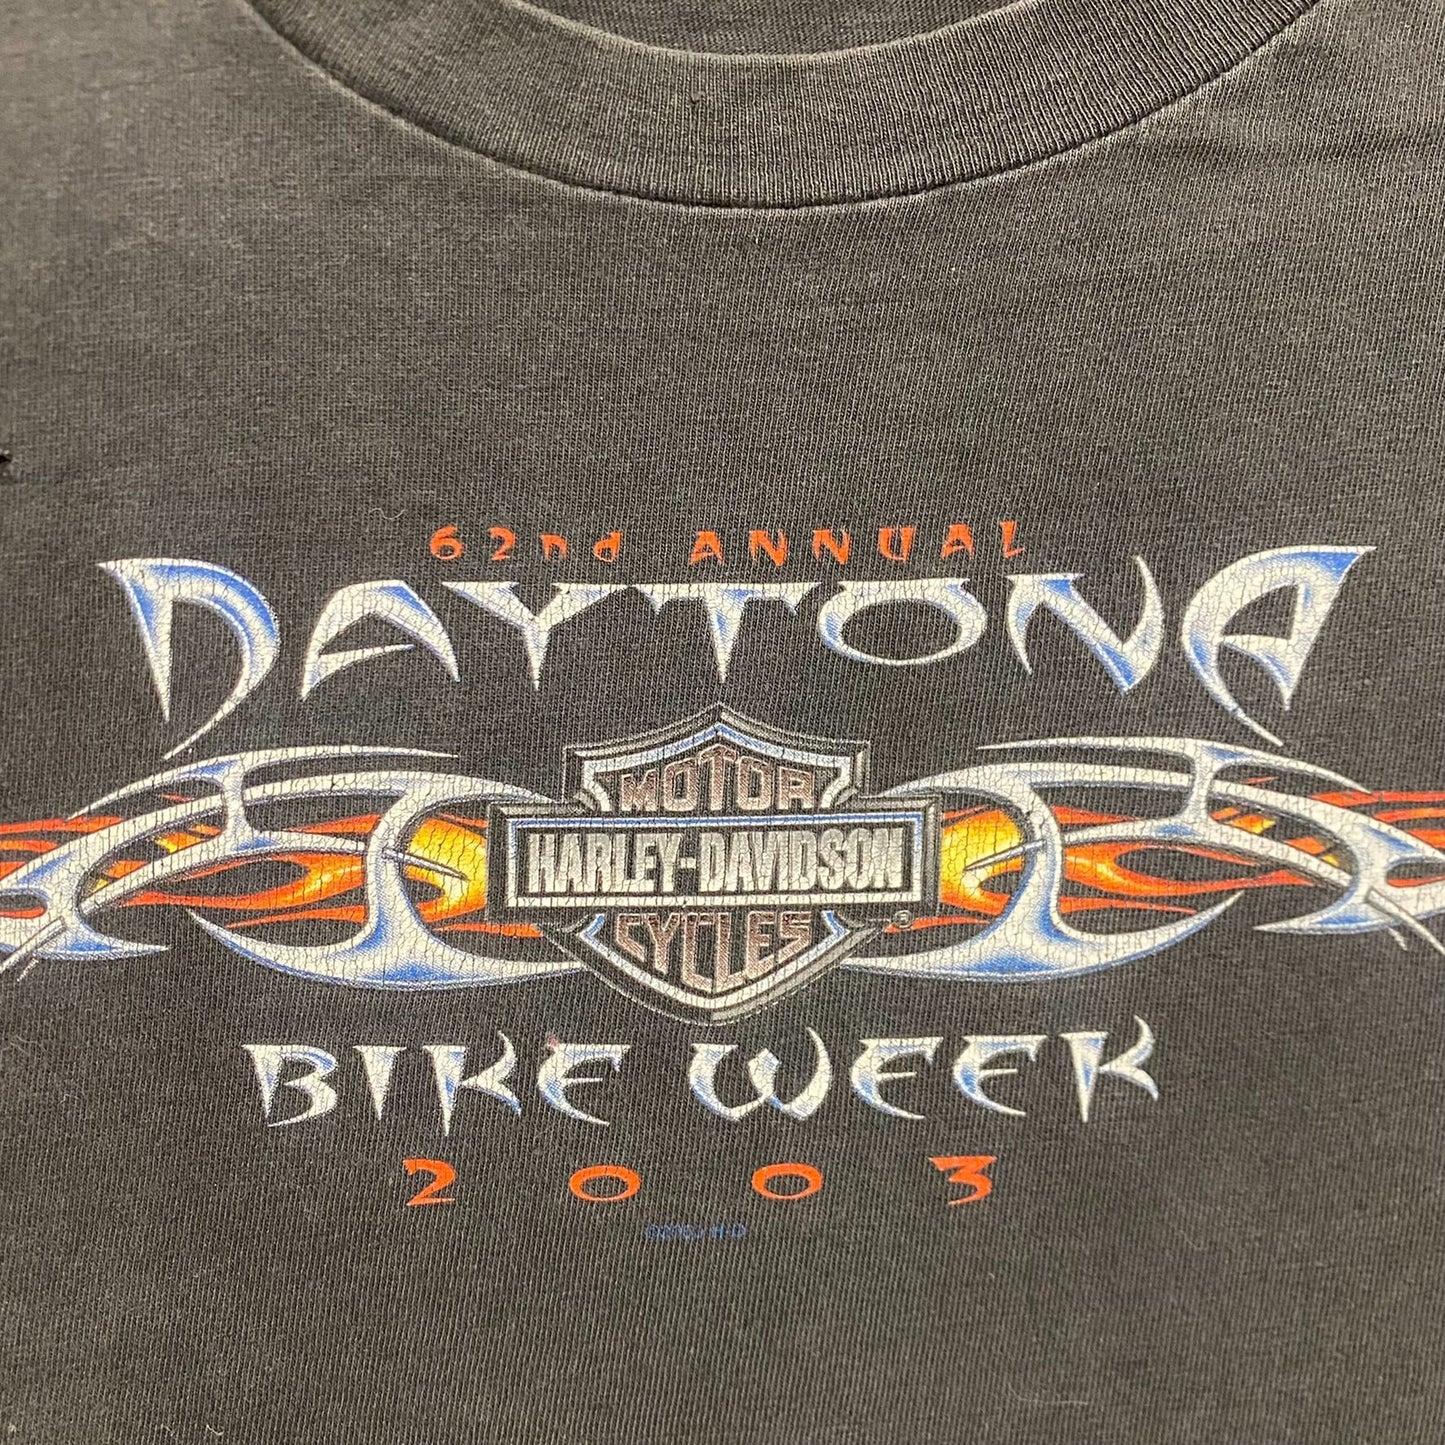 Vintage Y2K Harley Davidson Motorcycle Daytona Bike Week Tee